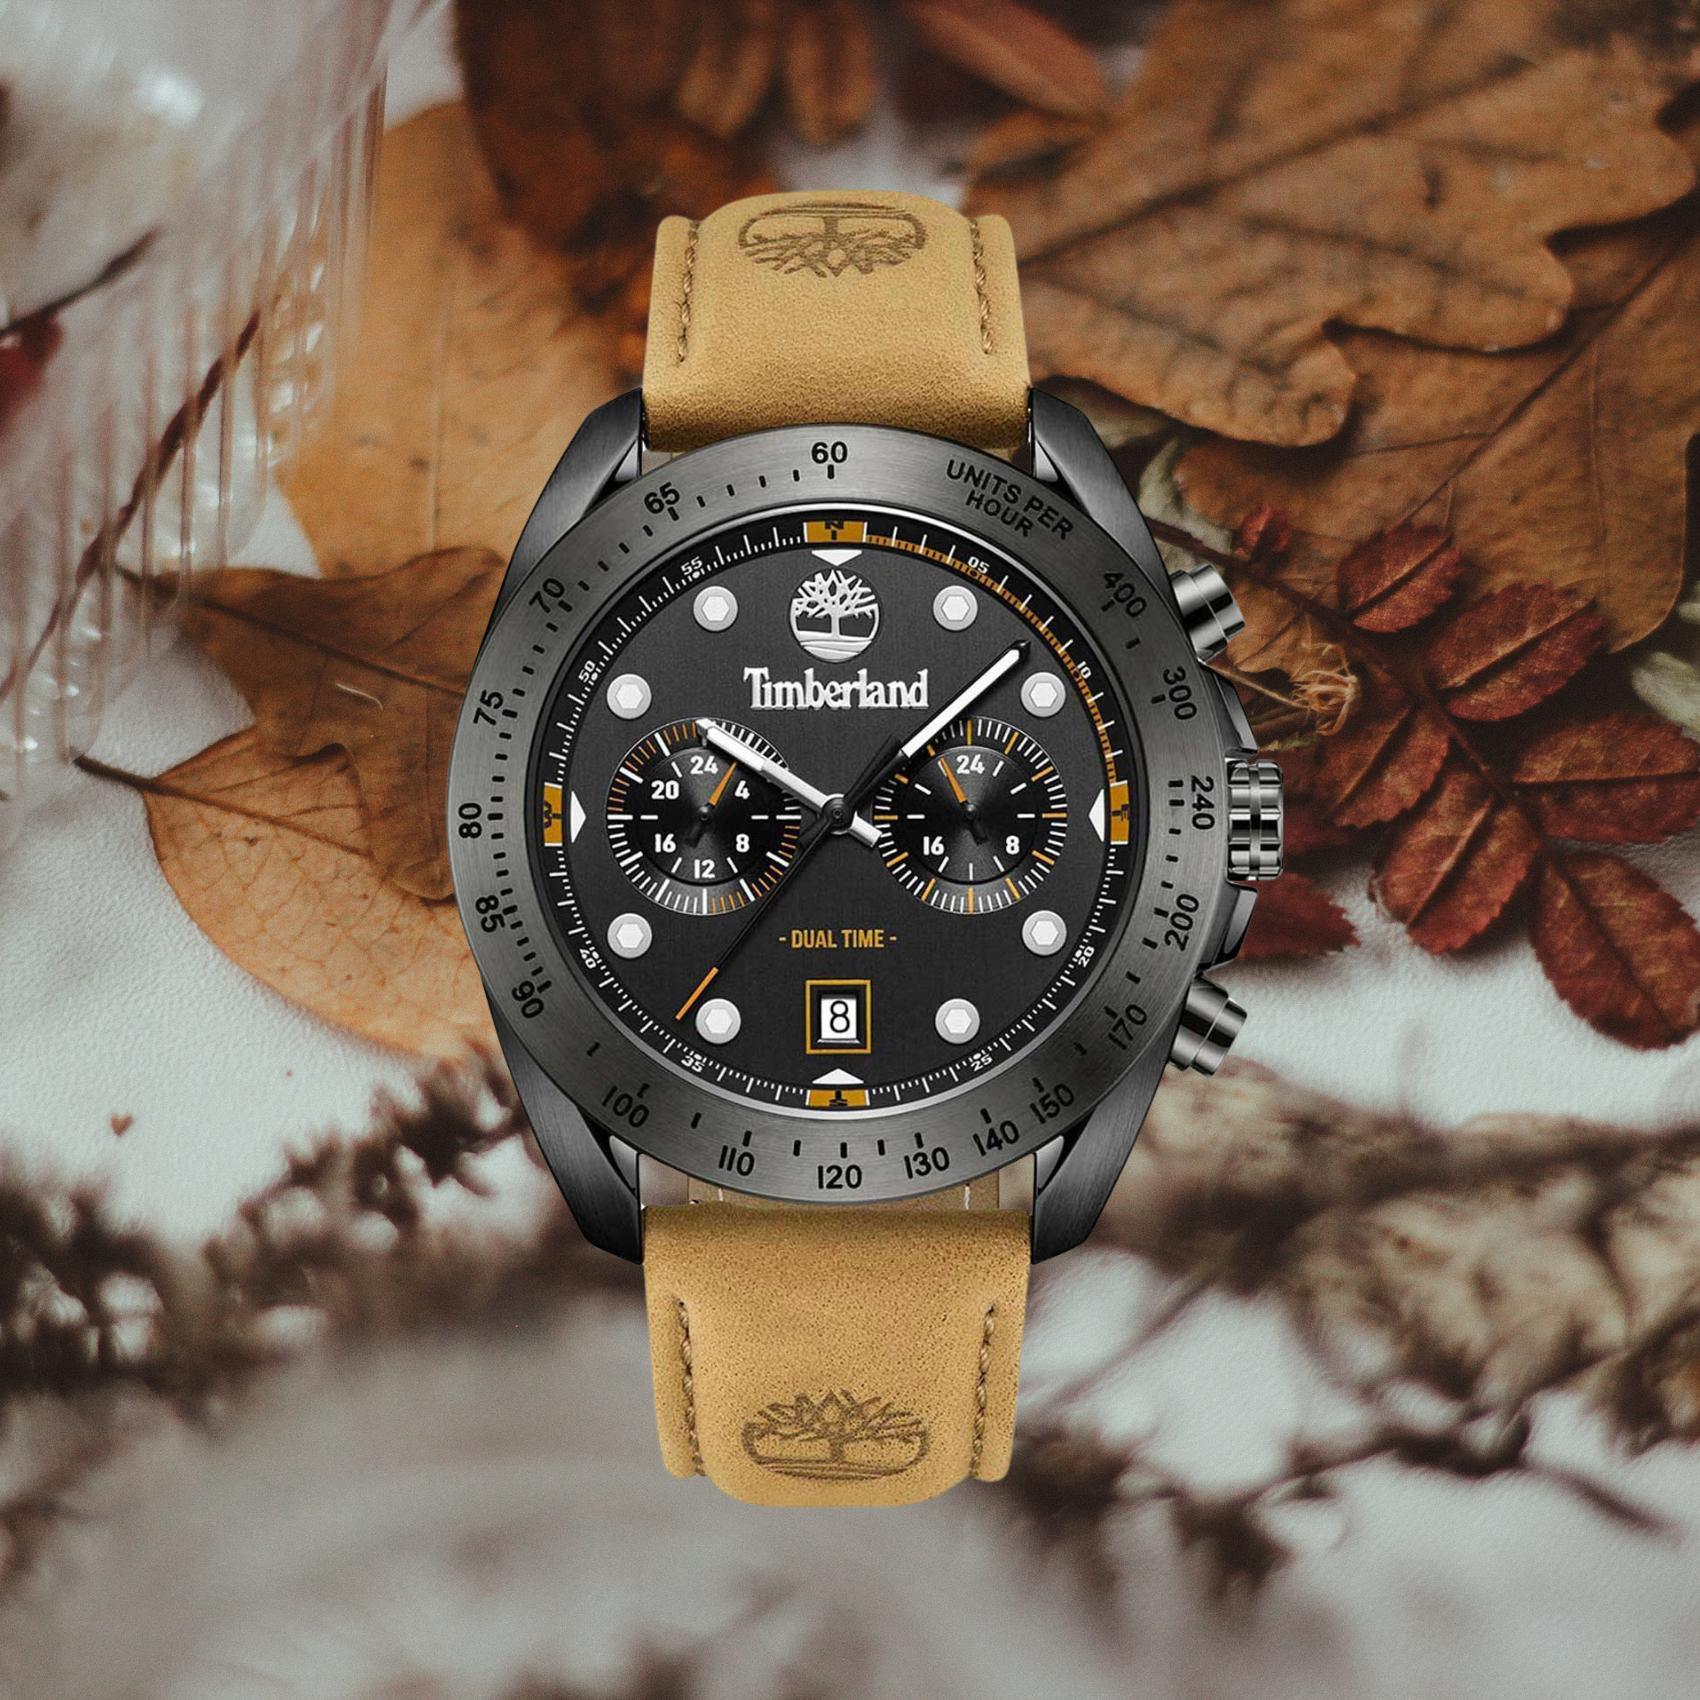 Αντρικό ρολόι Timberland Carrigan TDWGF2230501 χρονογράφος dual time με ταμπά δερμάτινο λουράκι και μαύρο καντράν διαμέτρου 44mm με ημερομηνία.